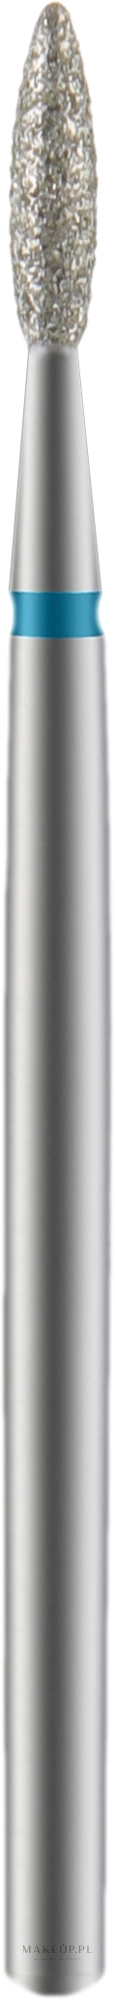 Frez diamentowy, podłużny, niebieski, średnica 2,1 mm, część robocza 8 mm - Staleks Pro — Zdjęcie 1 szt.